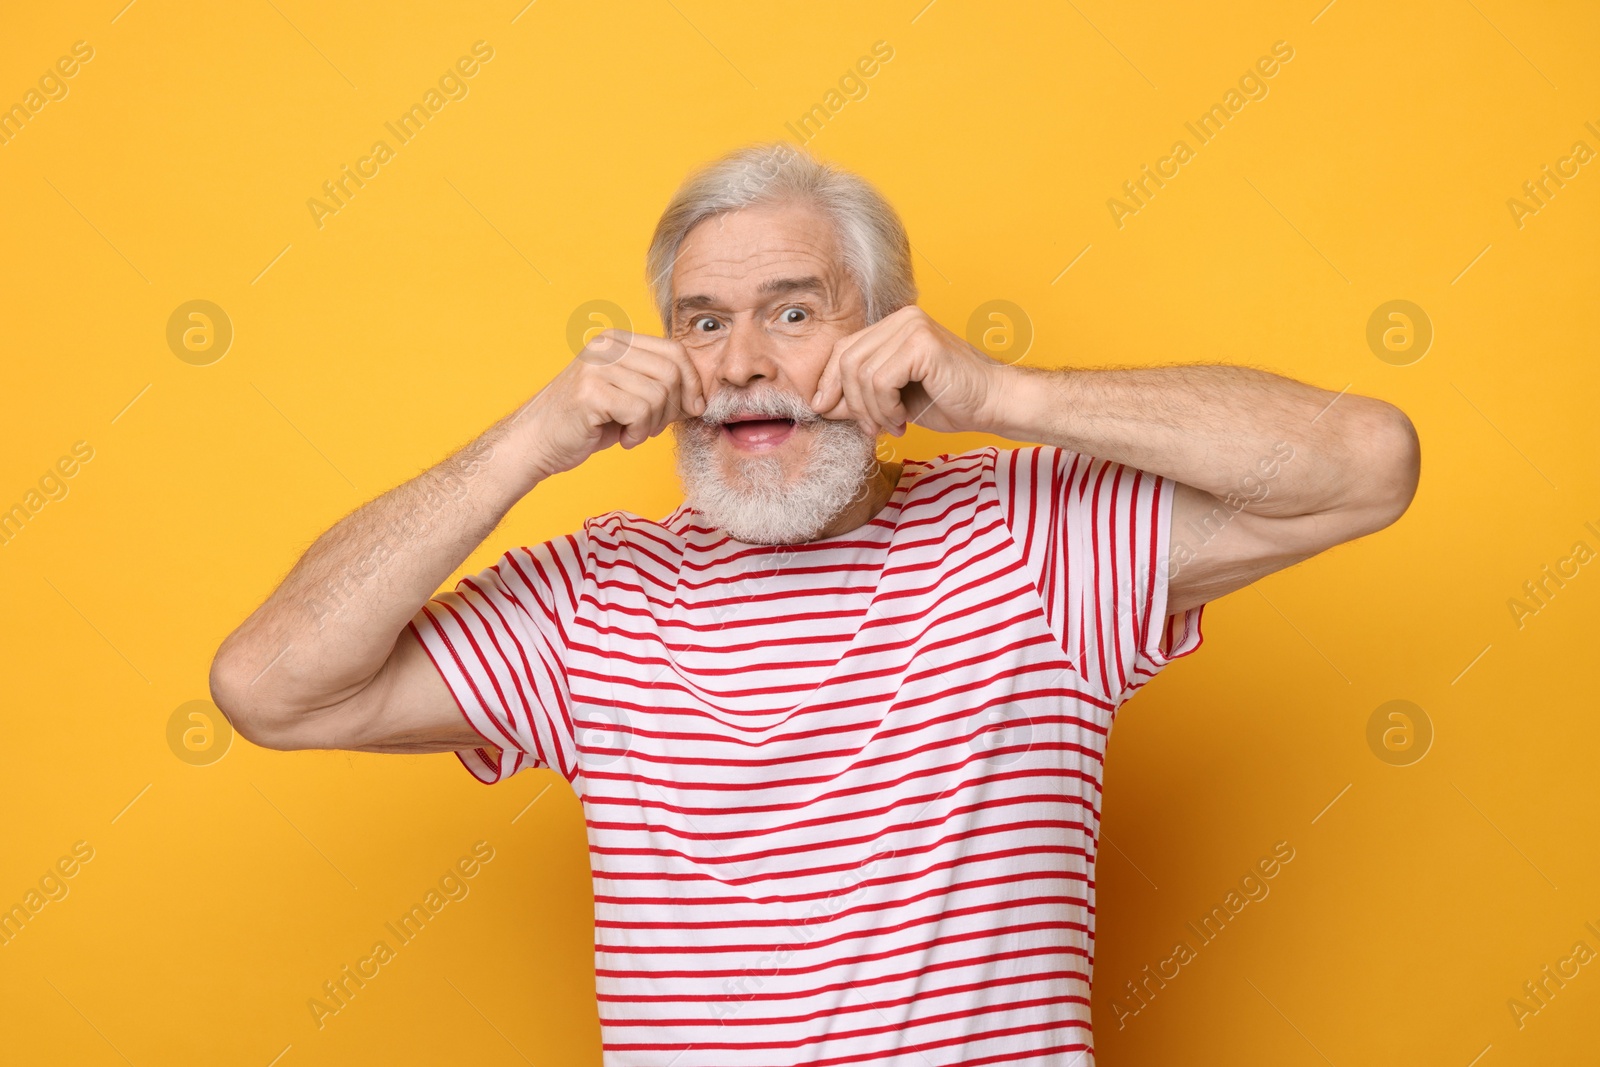 Photo of Senior man touching mustache on orange background